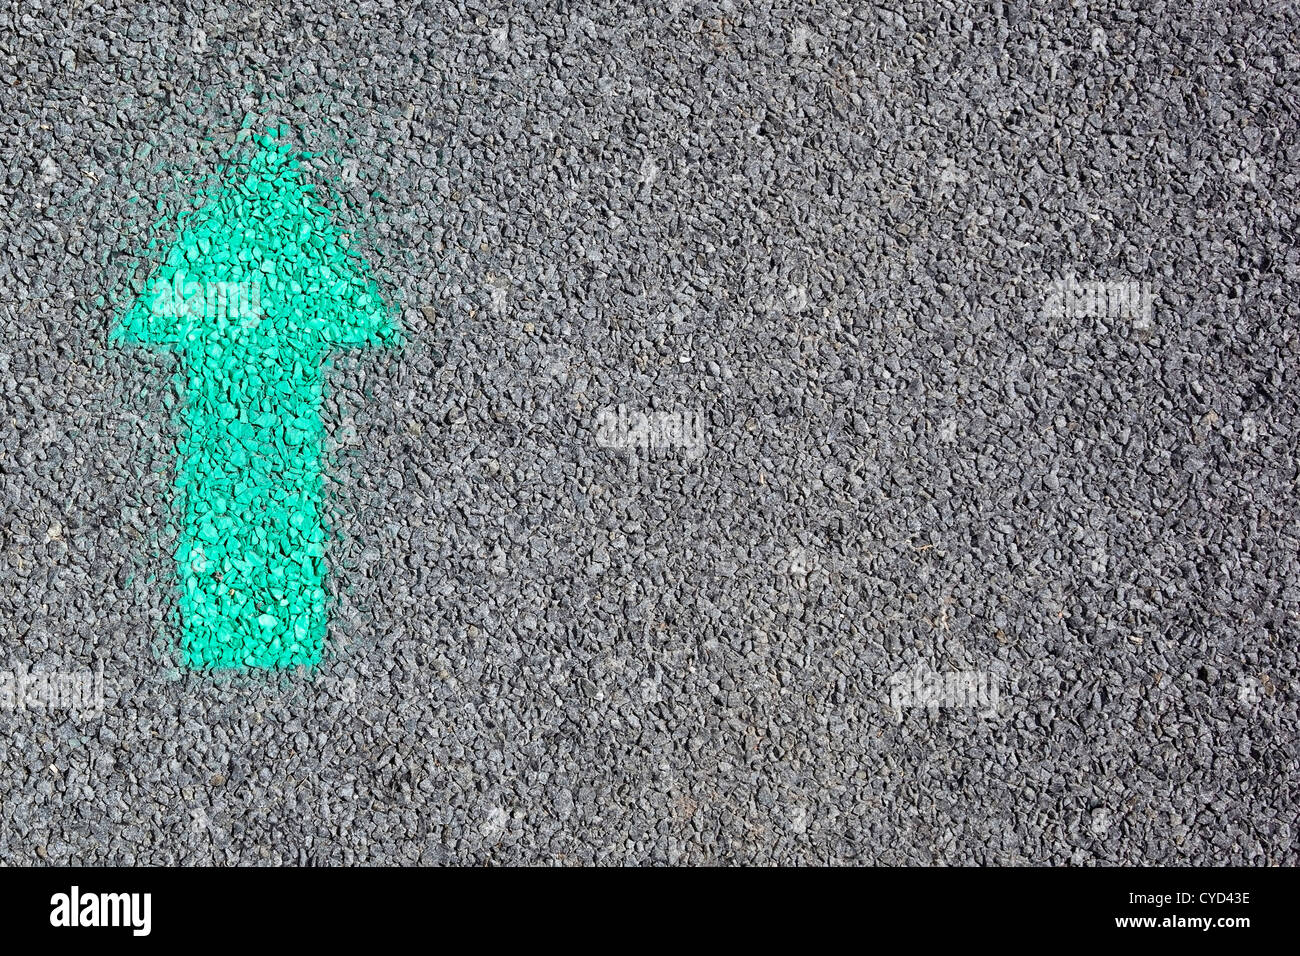 Immagine di sfondo di una freccia verde verniciato a spruzzo su di una strada asfaltata della superficie Foto Stock